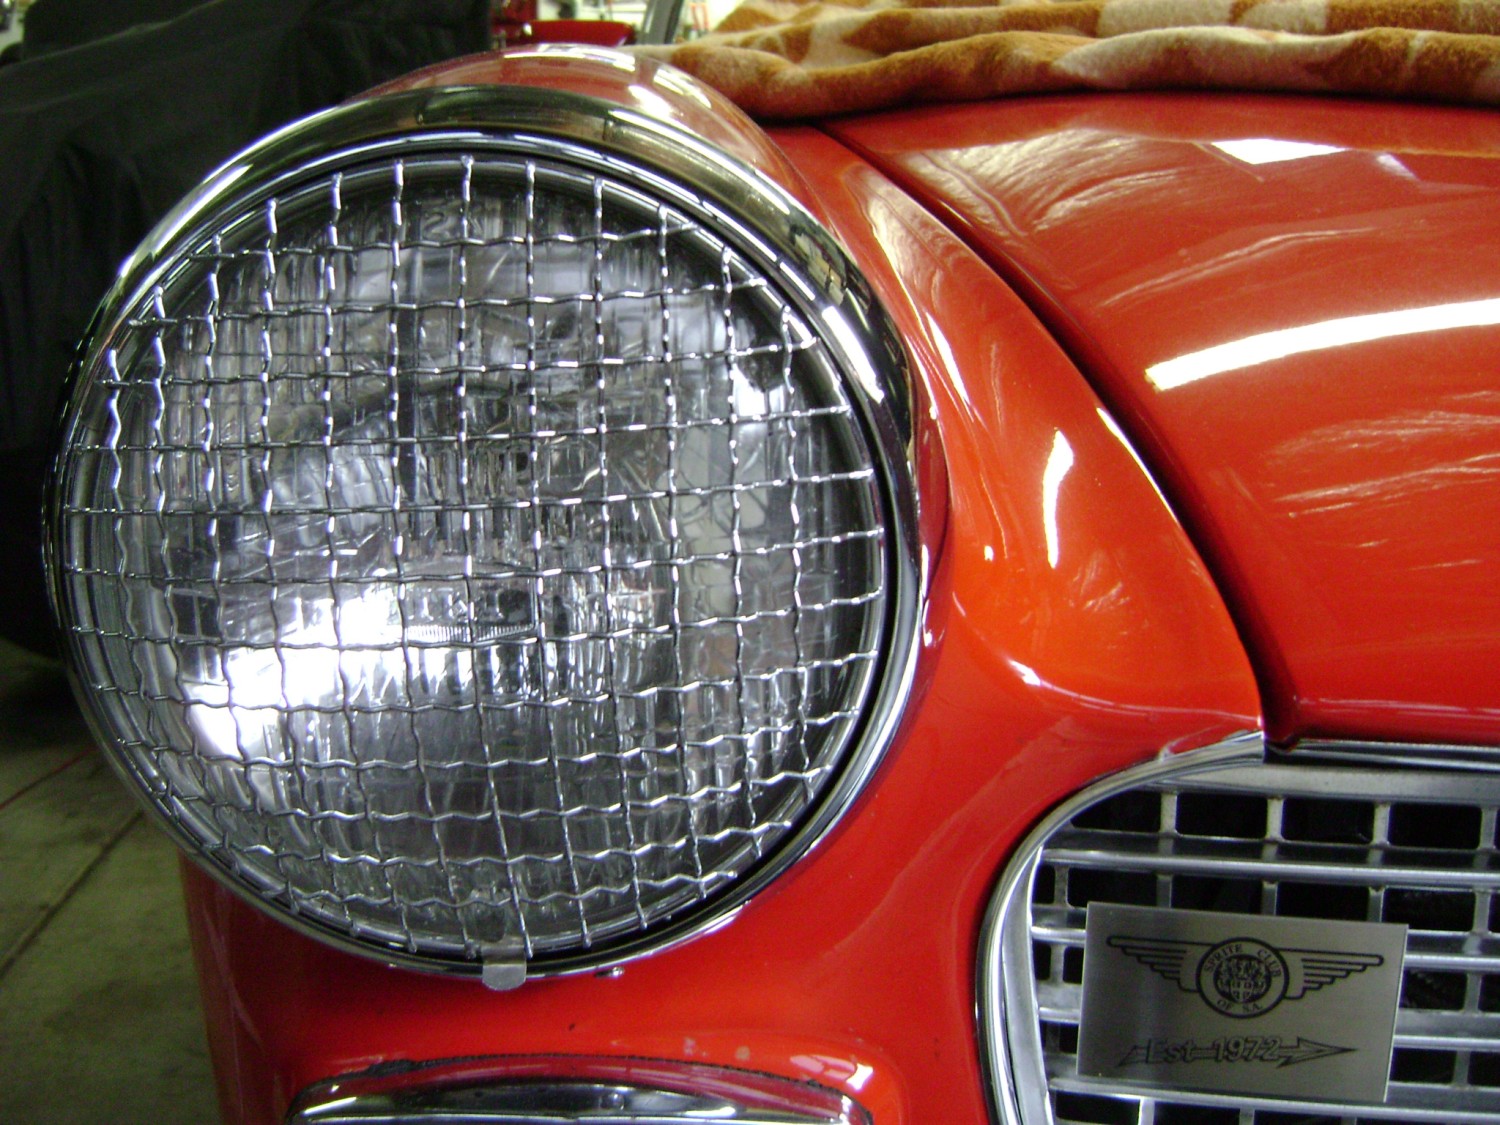 1963 Austin Healey Sprite Custom - littlecar - Shannons Club1500 x 1125